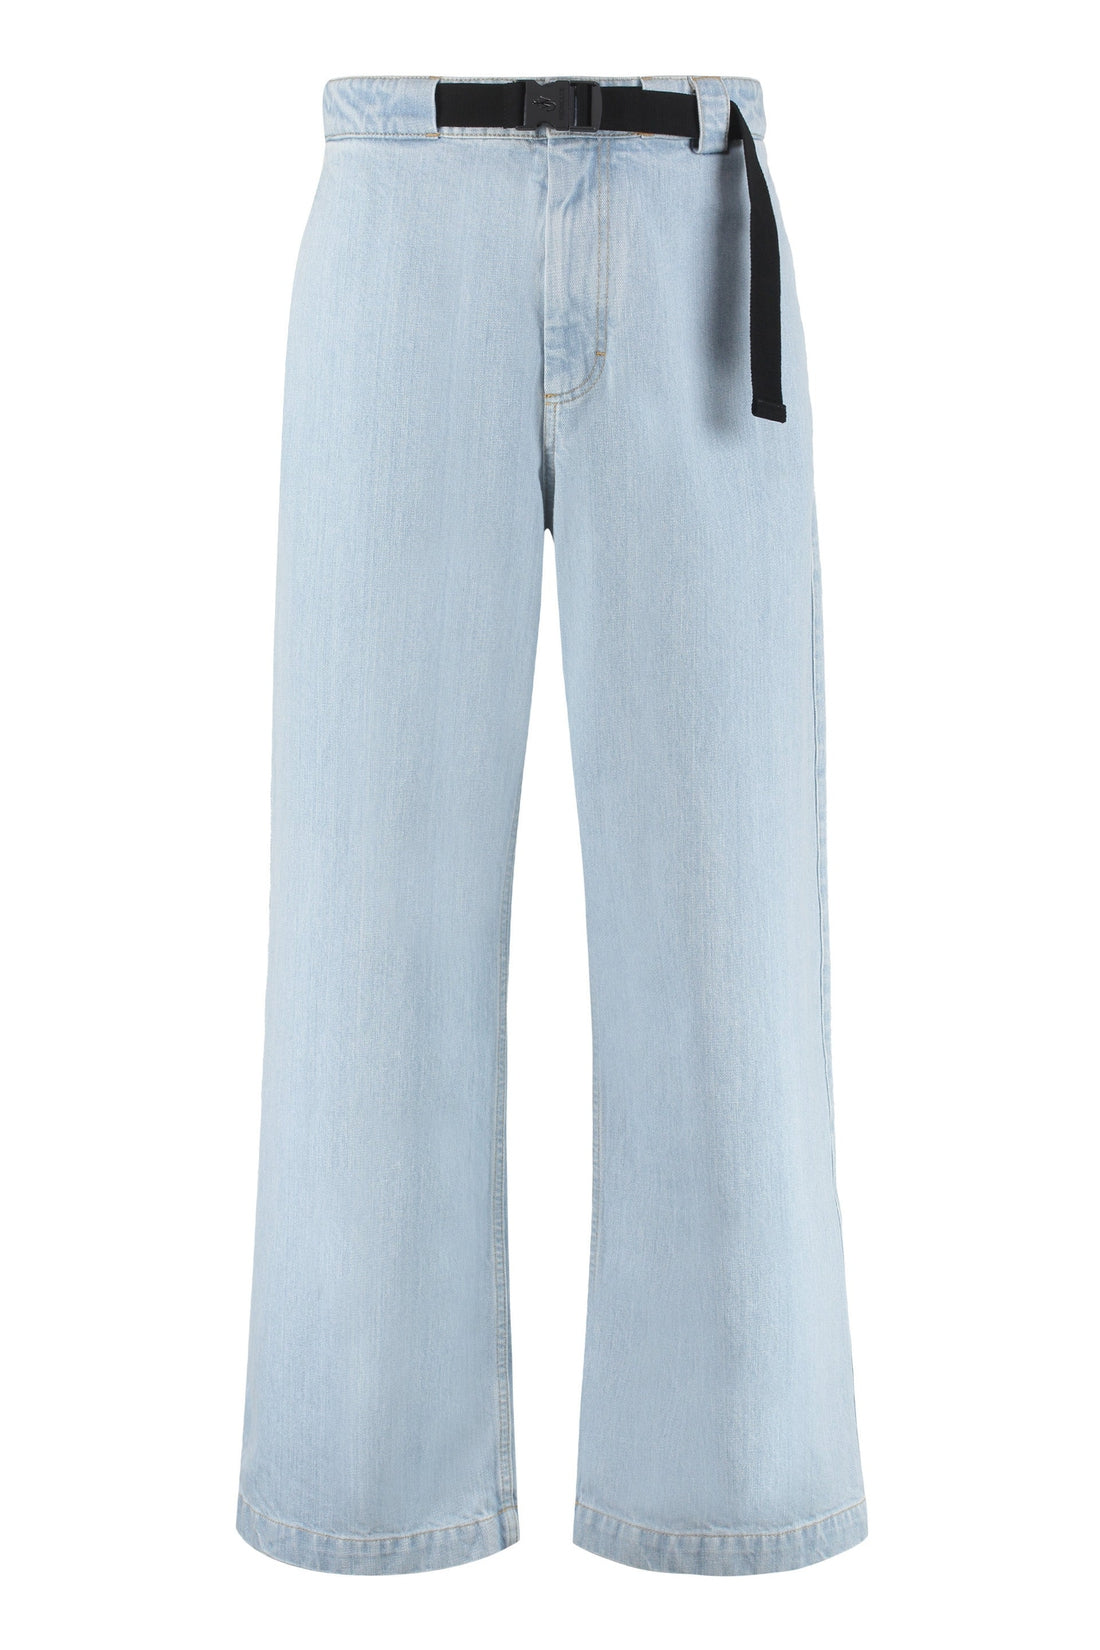 Moncler Genius-OUTLET-SALE-1 Moncler JW Anderson - Wide leg jeans-ARCHIVIST